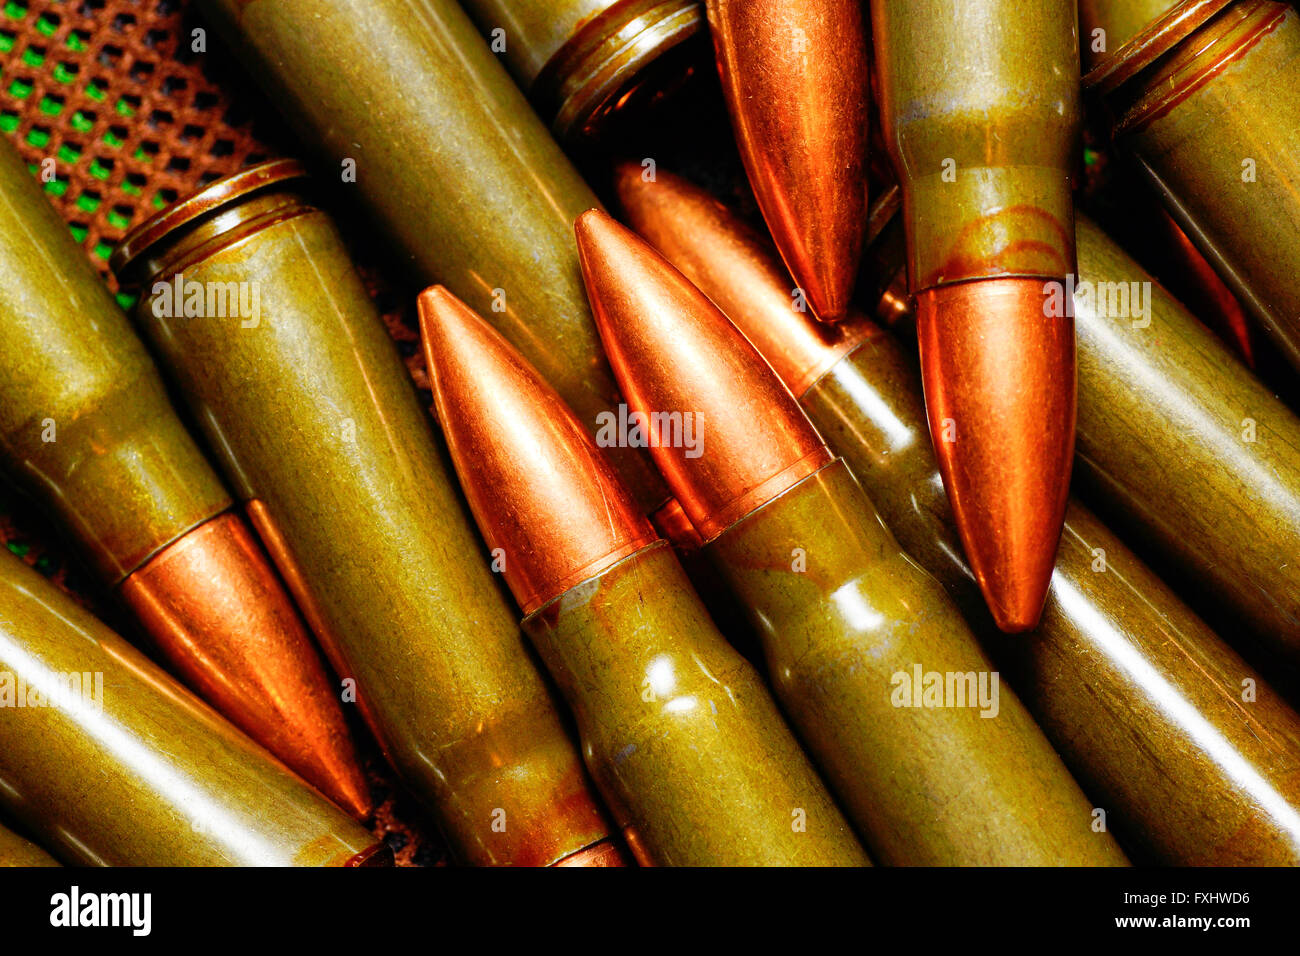 russian rifle and machine gun ammo Stock Photo